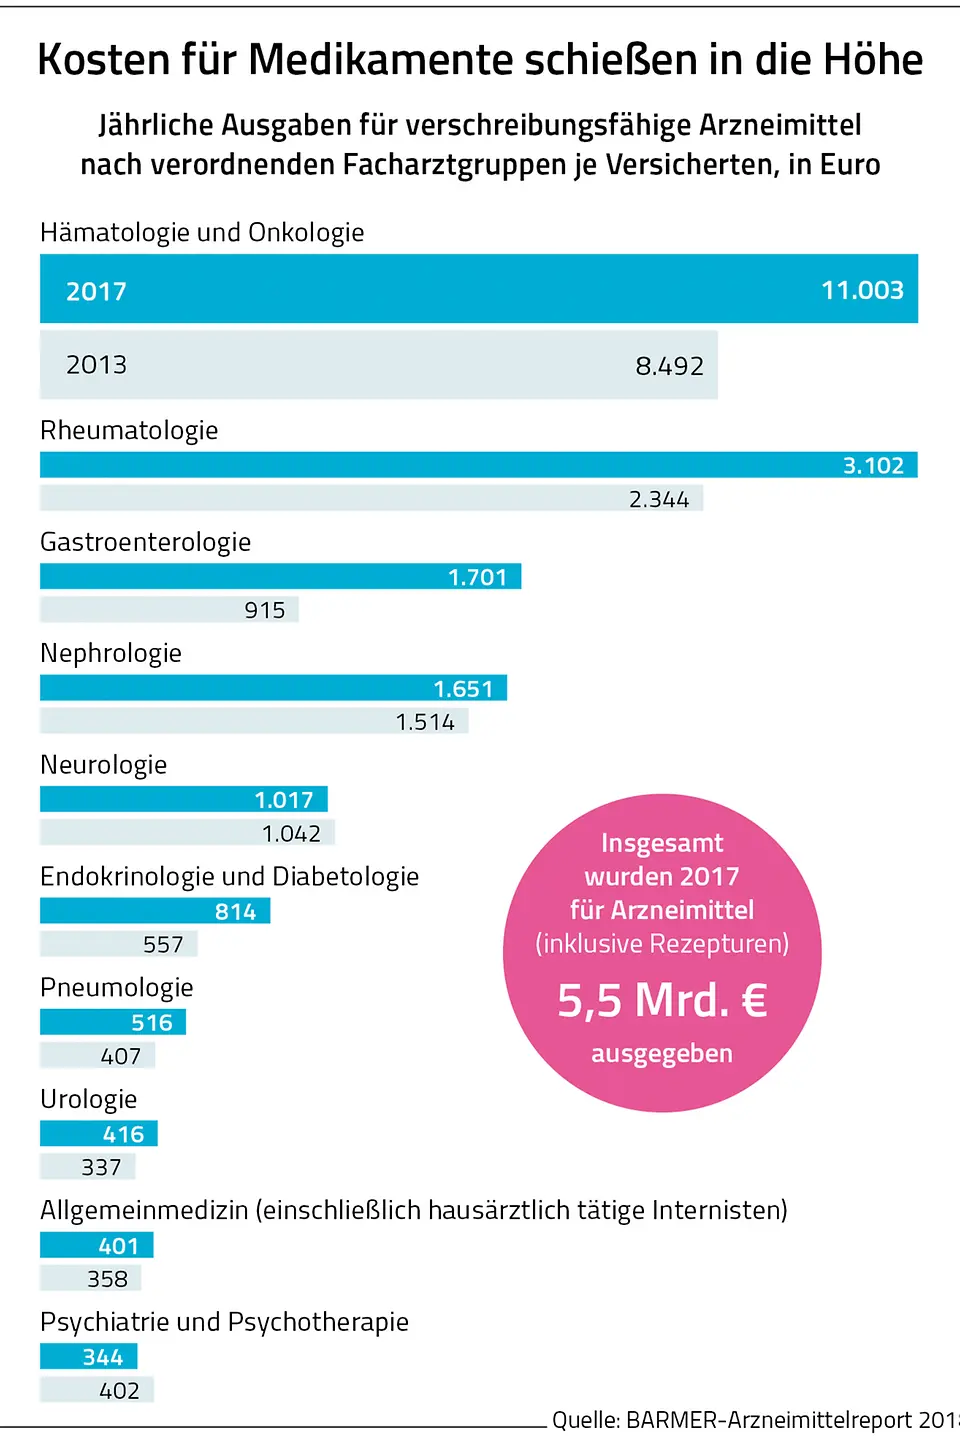 Die Grafik zeigt Jährliche Ausgaben für verschreibungsfähige Arzneimittel nach verordnenden Facharztgruppen je Versicherten